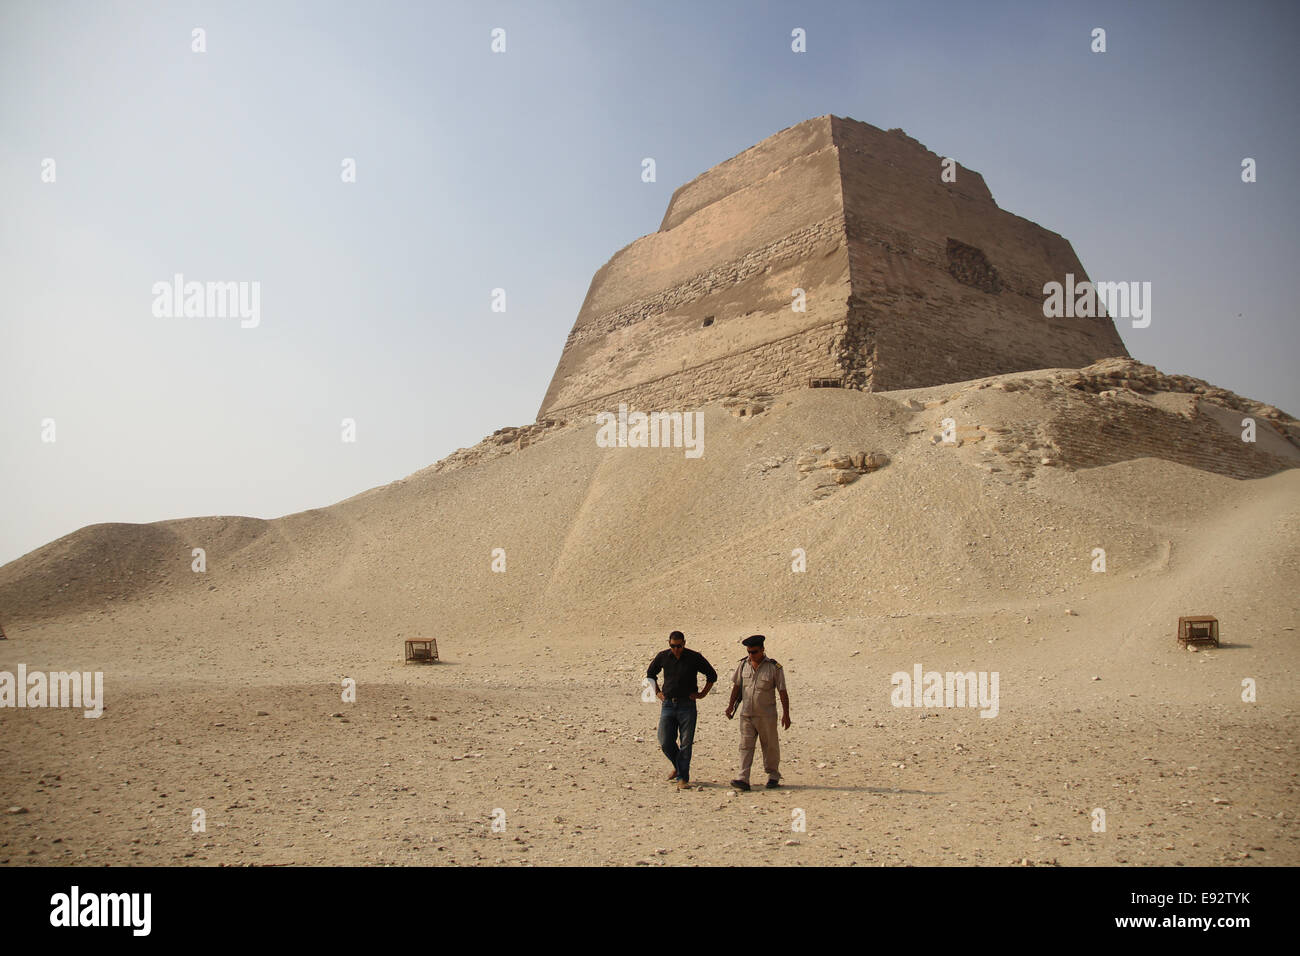 Die Pyramide des Königs Snefru (der erste König der 4. Dynastie, bestieg den Thron um 2613 v. Chr.) Stockfoto